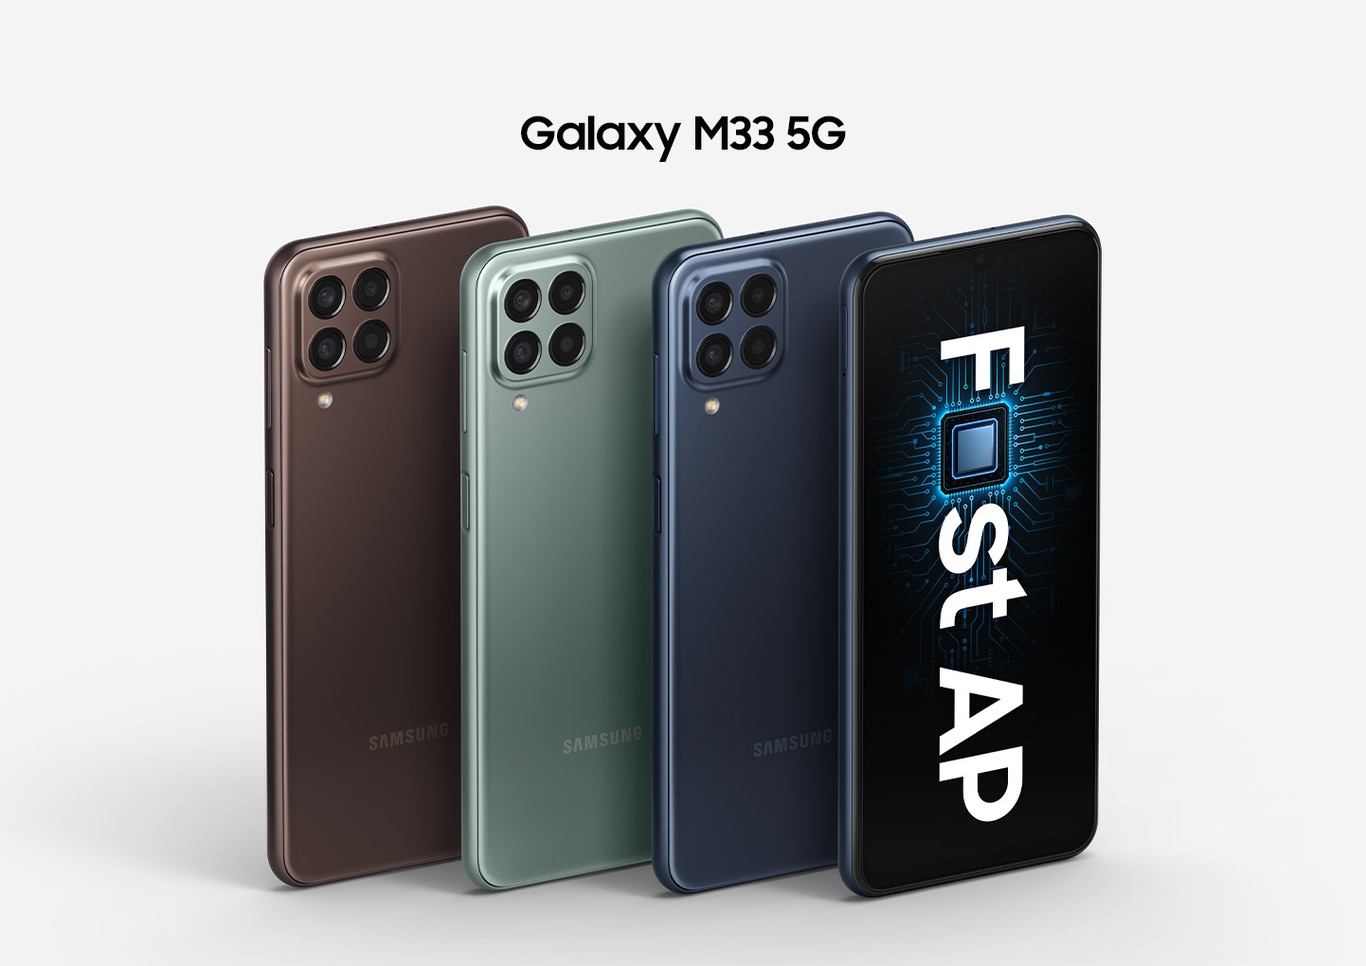 Galaxy M33 5G blue 128 GB | Samsung Gulf